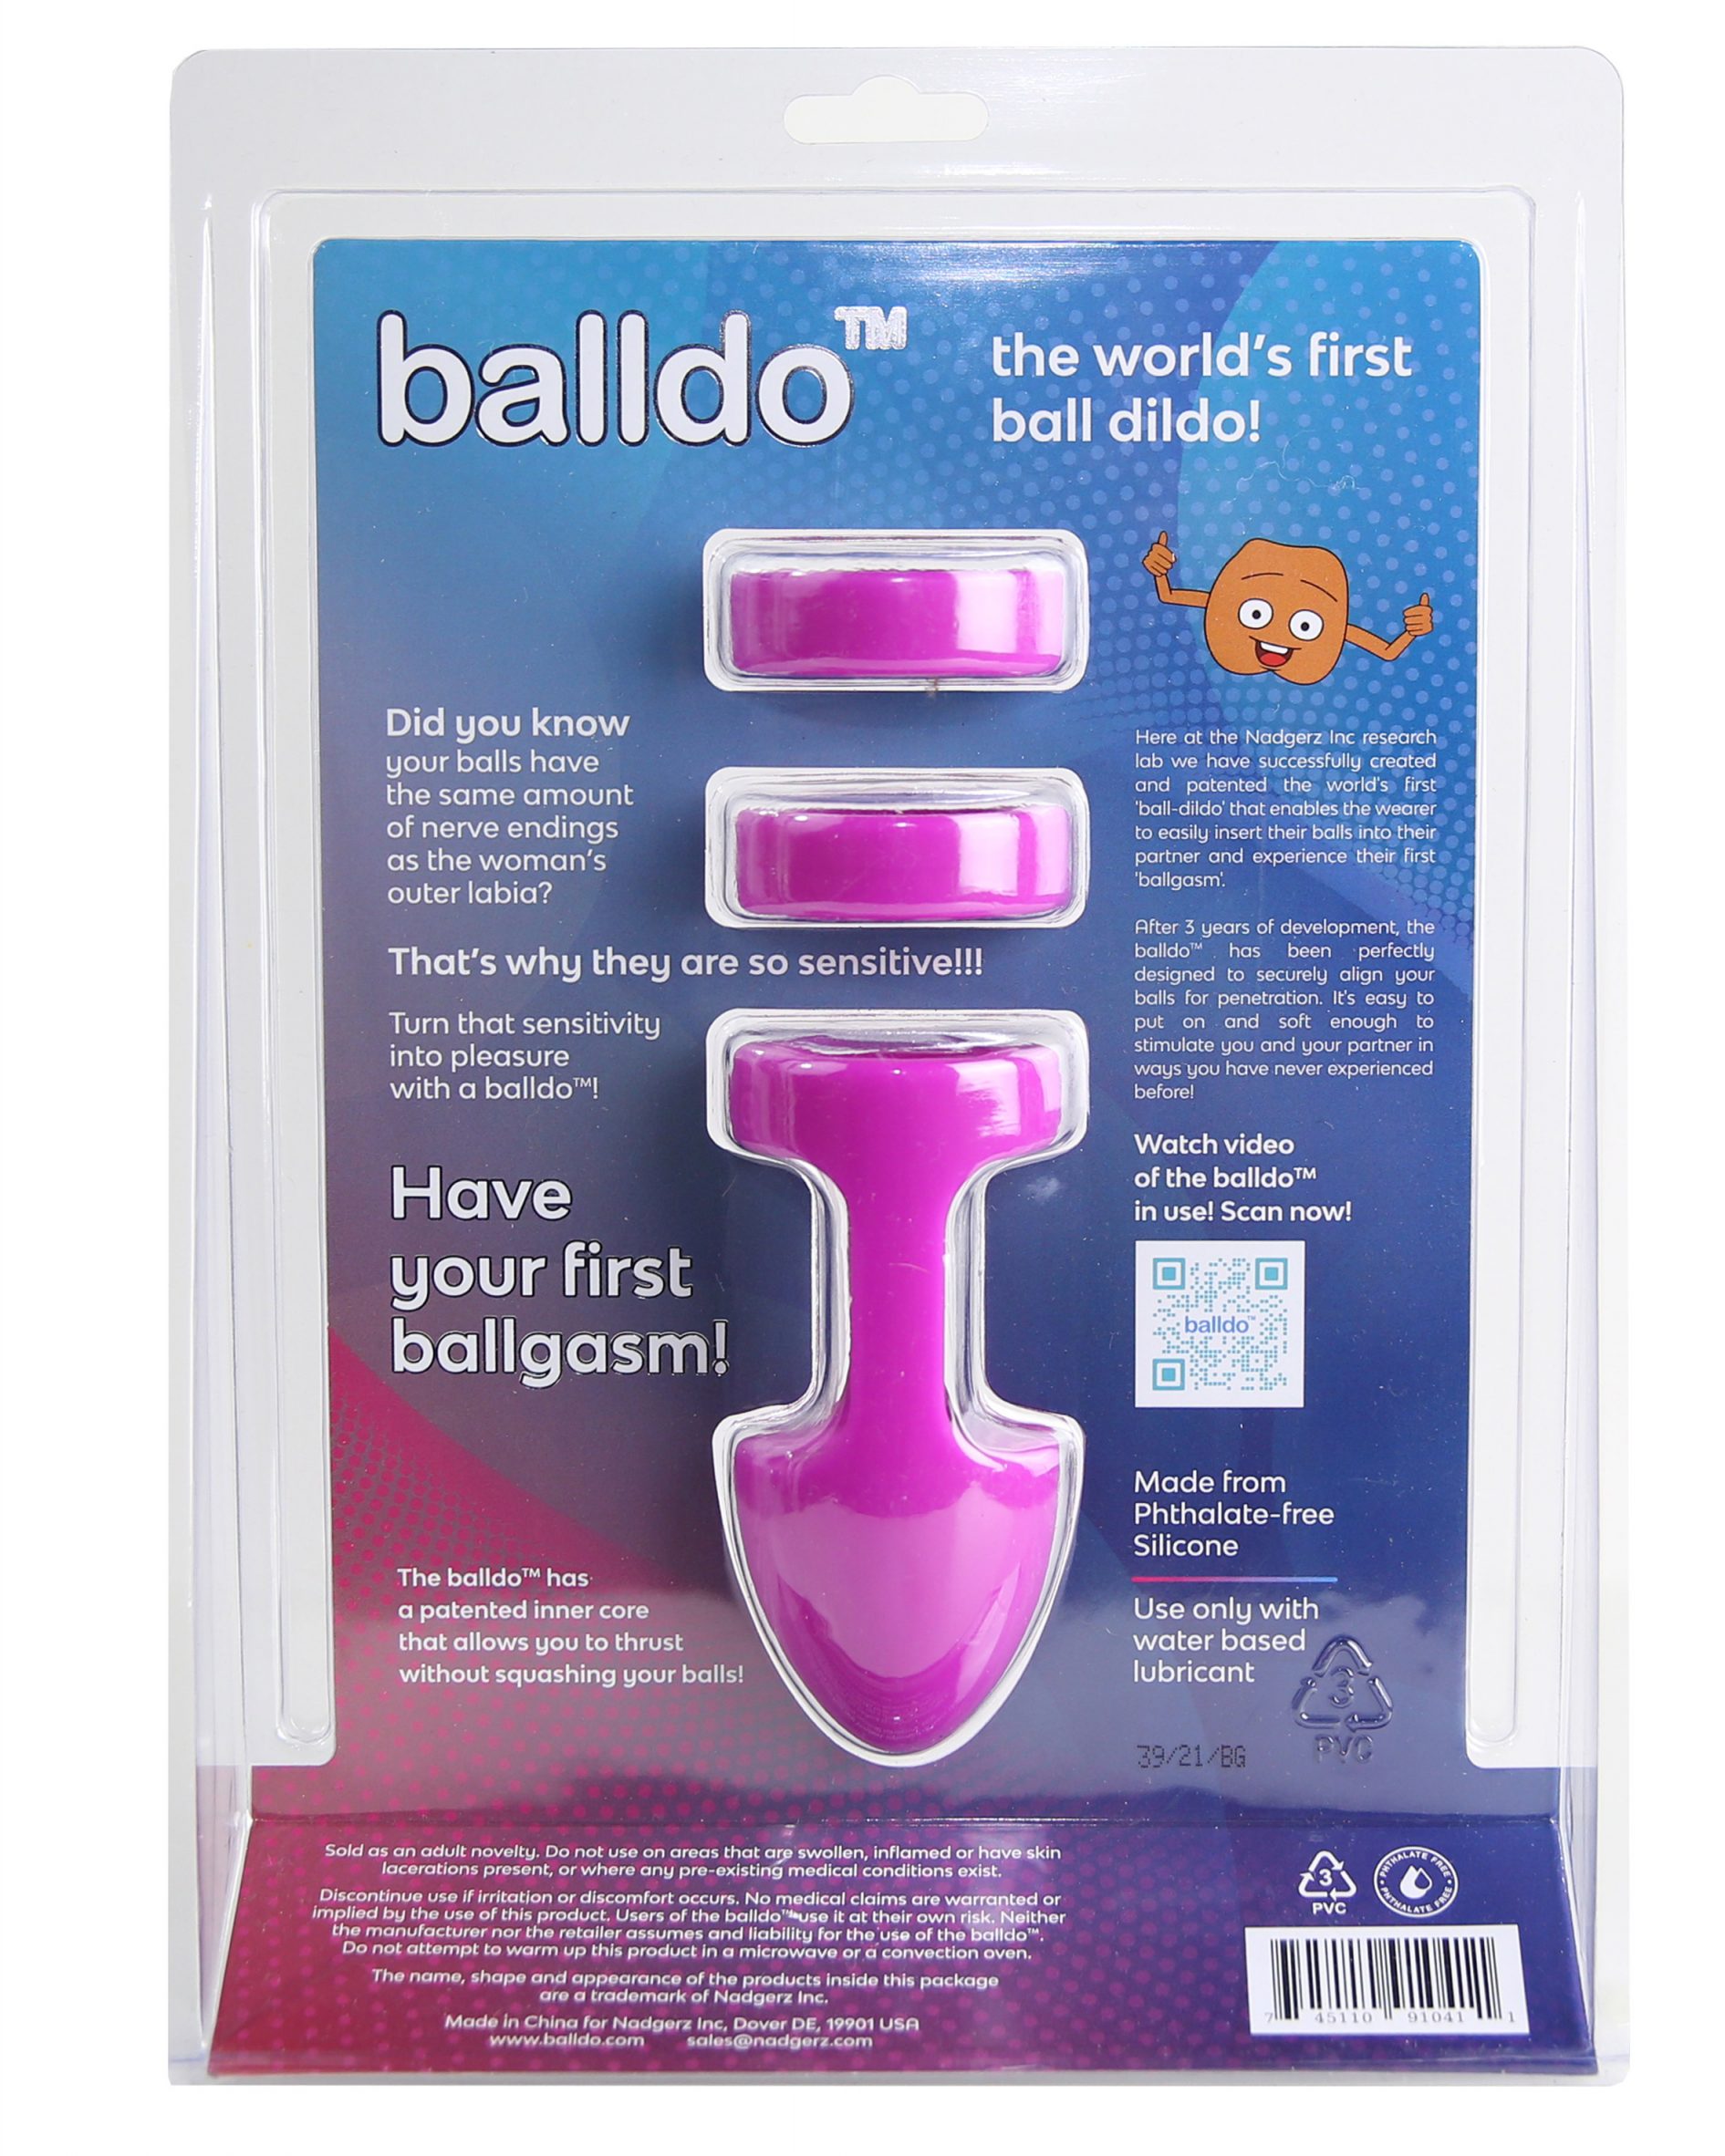 Balldo sex toy turns testicles into a dildo pic